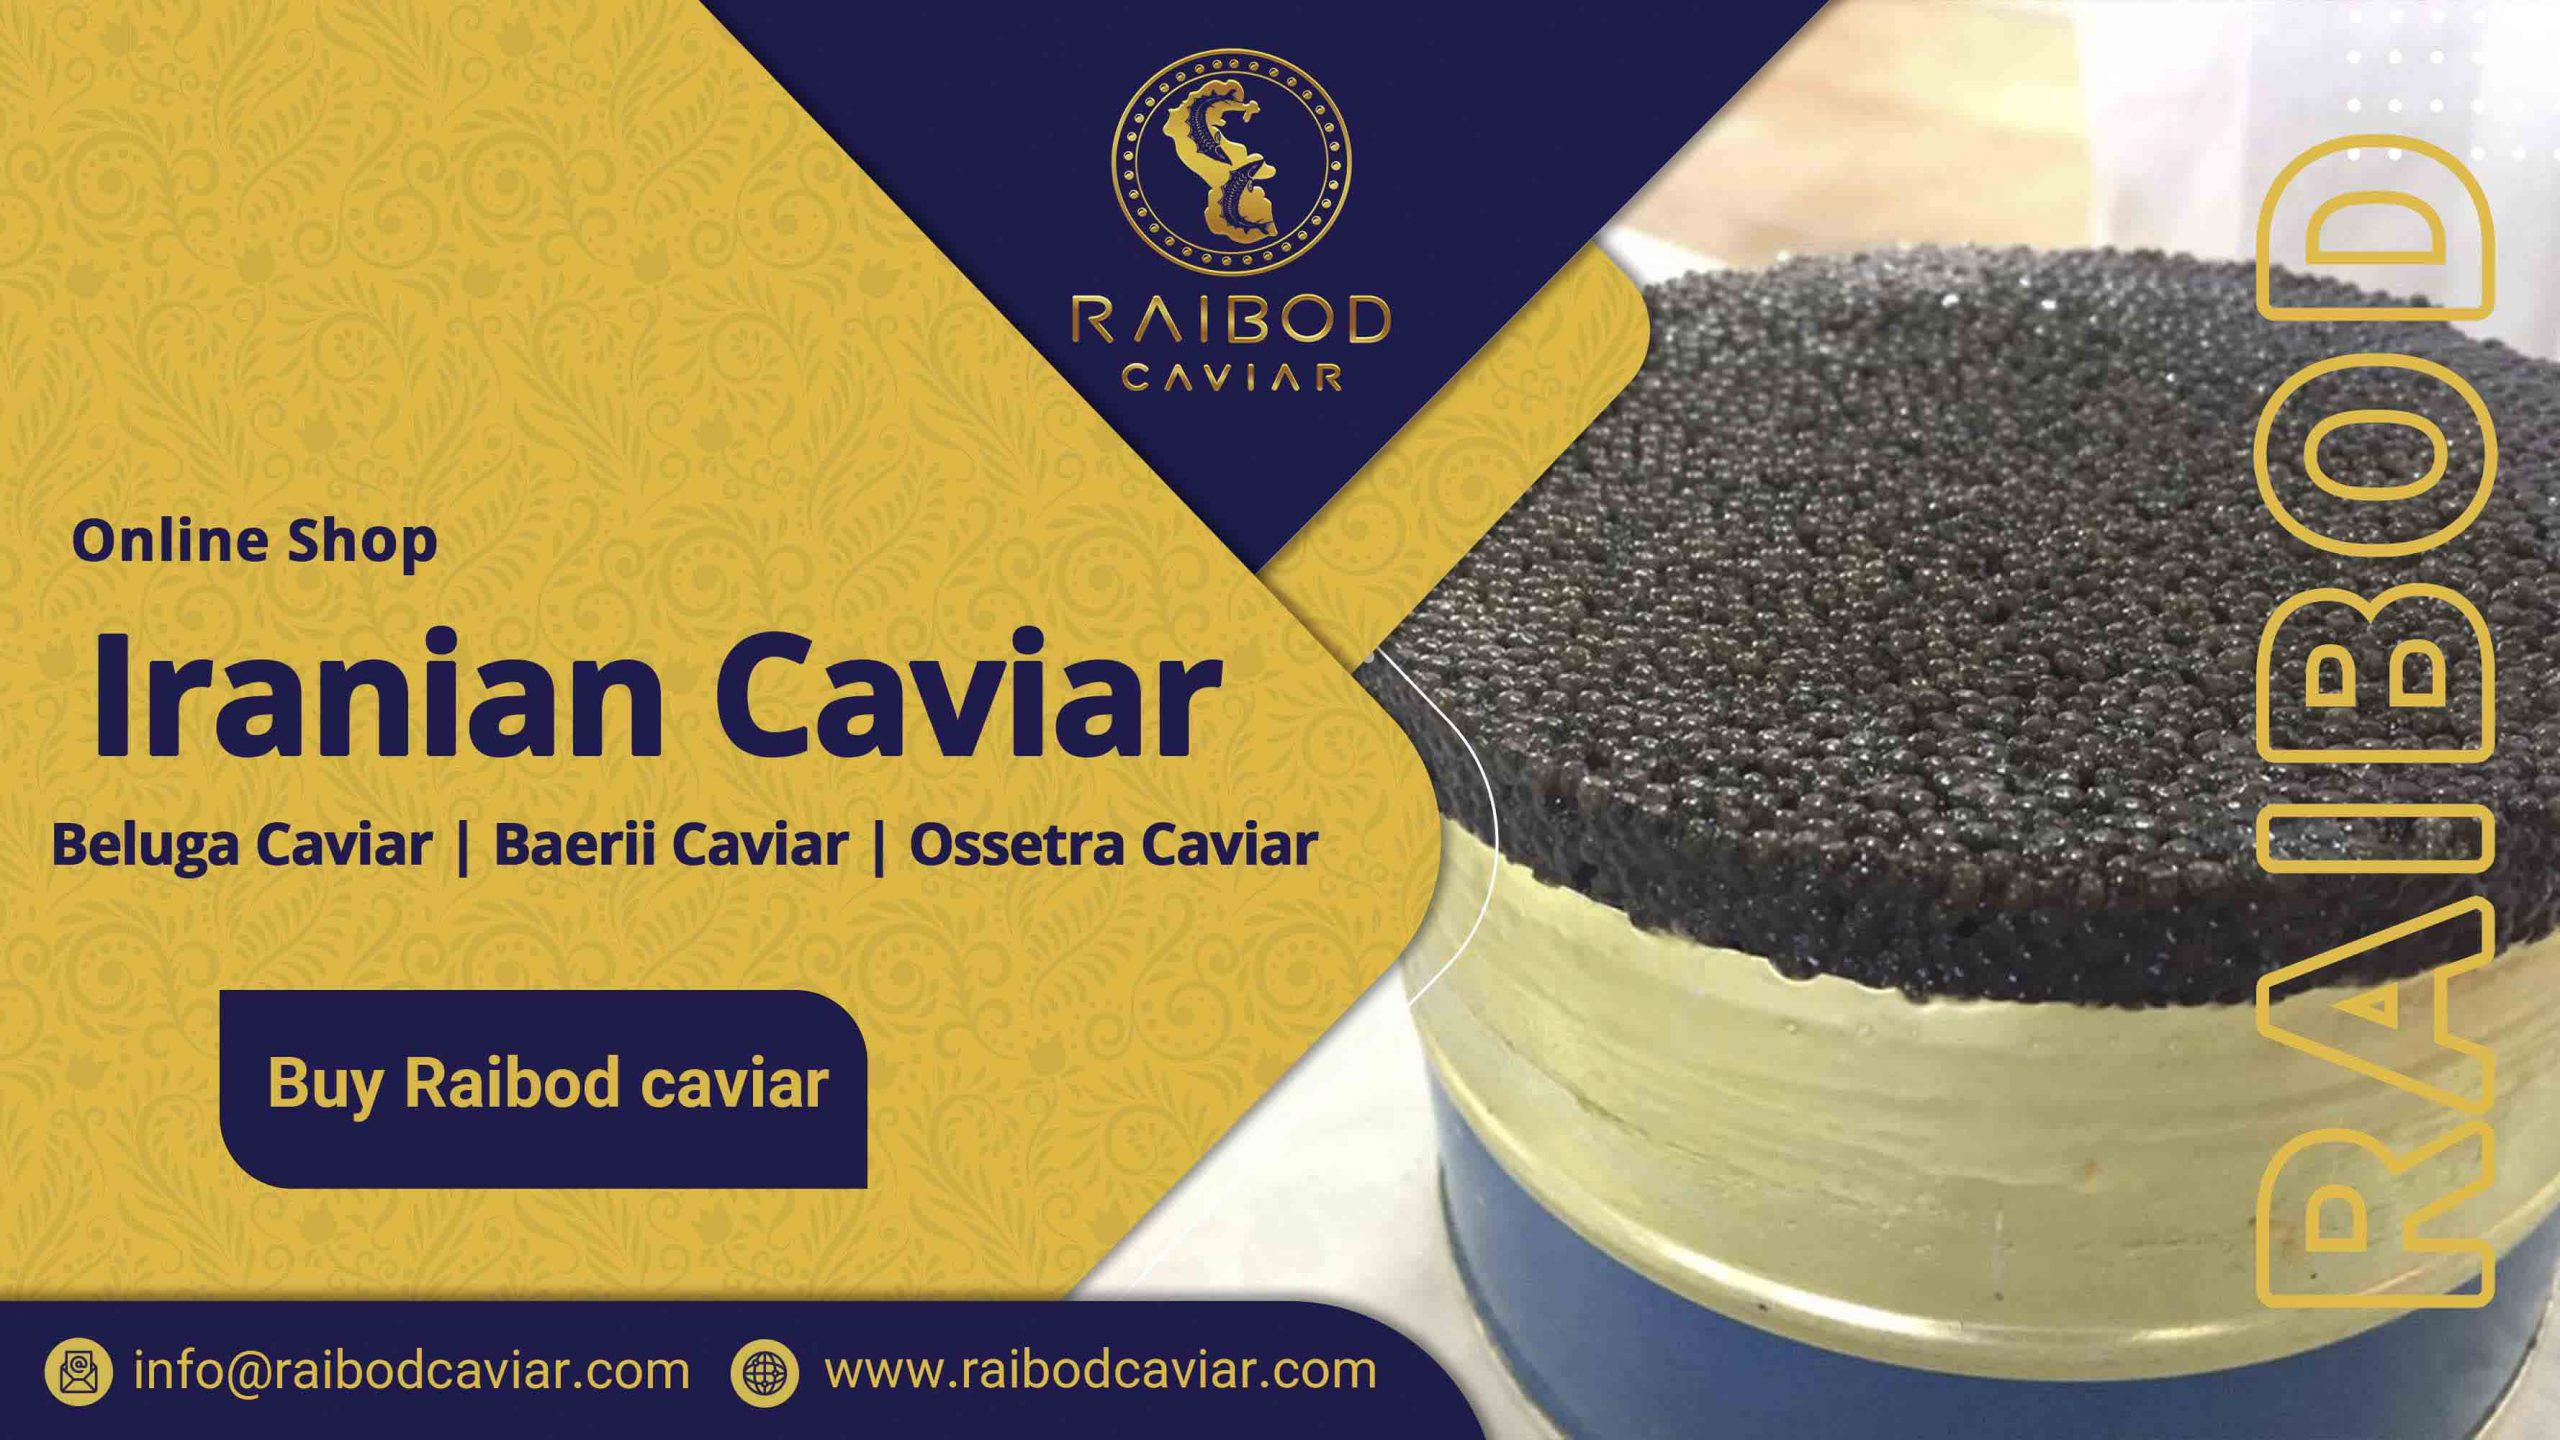 The price of caviar